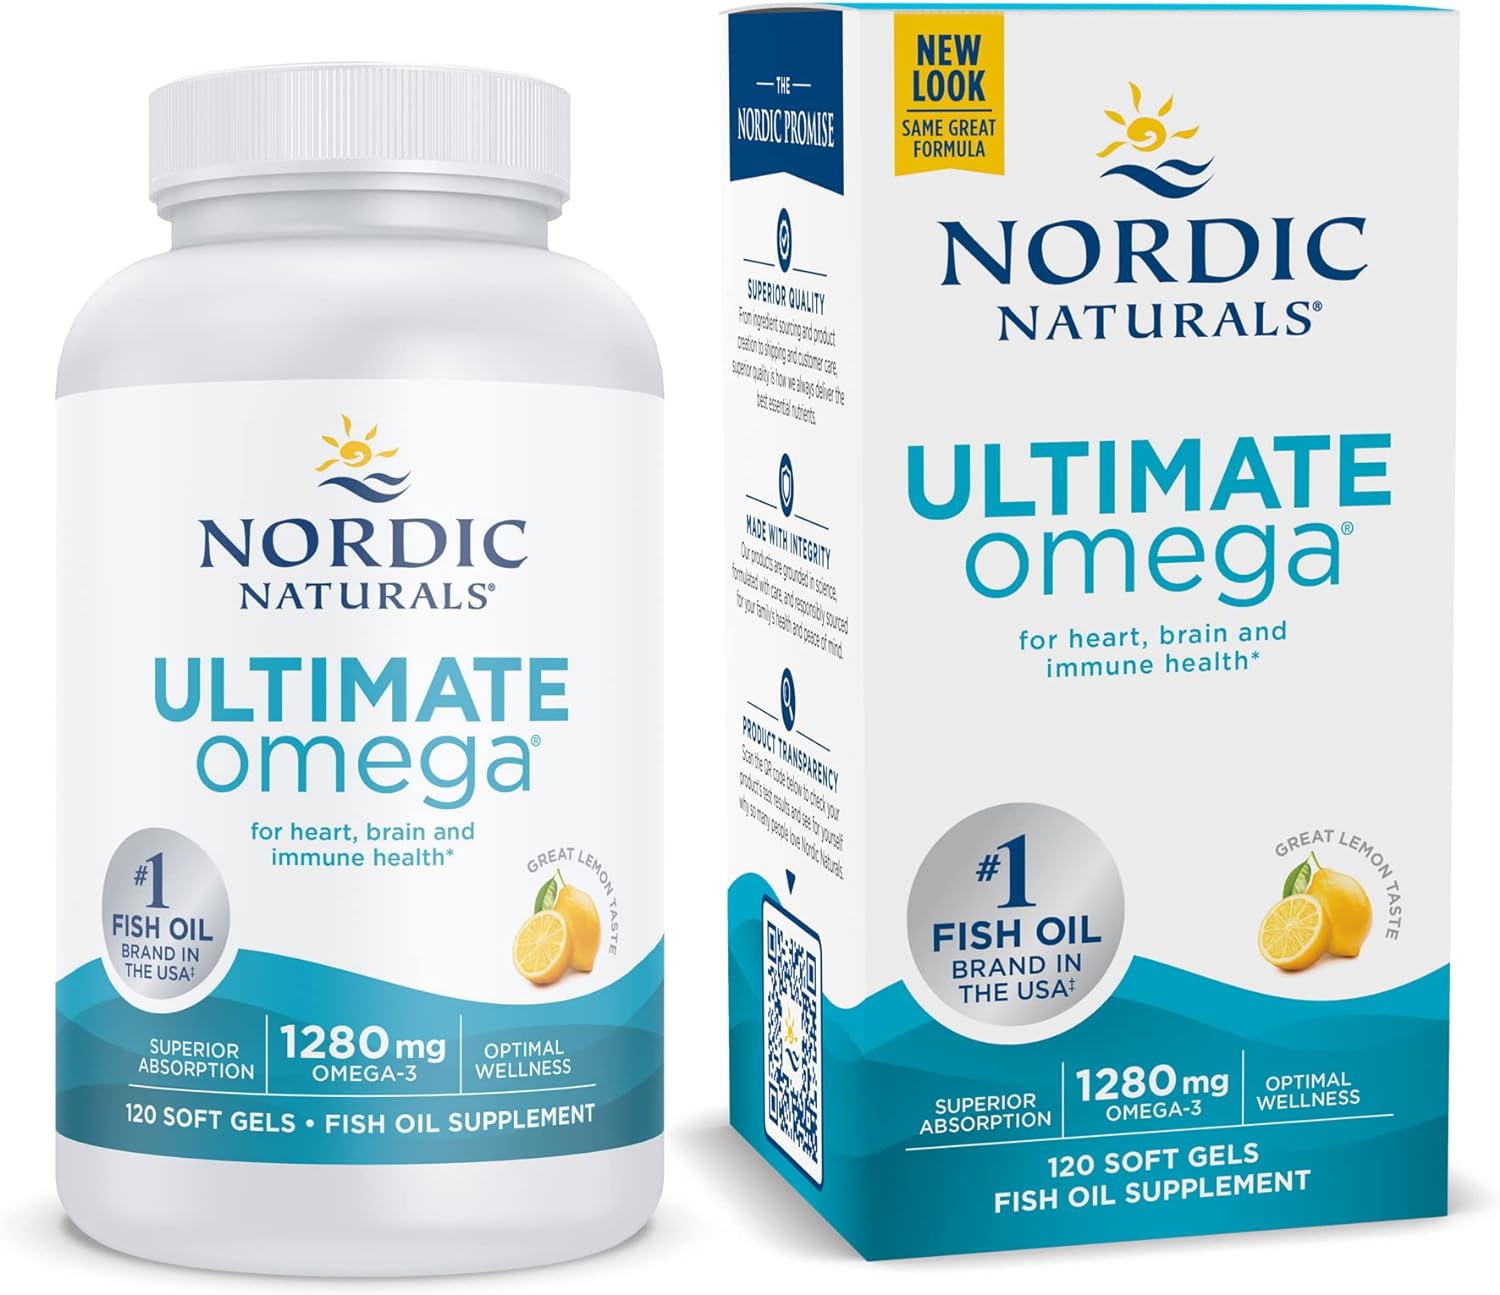 Nordic Naturals Ultimate Omega, Lemon Flavor - 120 Soft Gels - 1280 mg Omega-3 - High-Potency Omega-